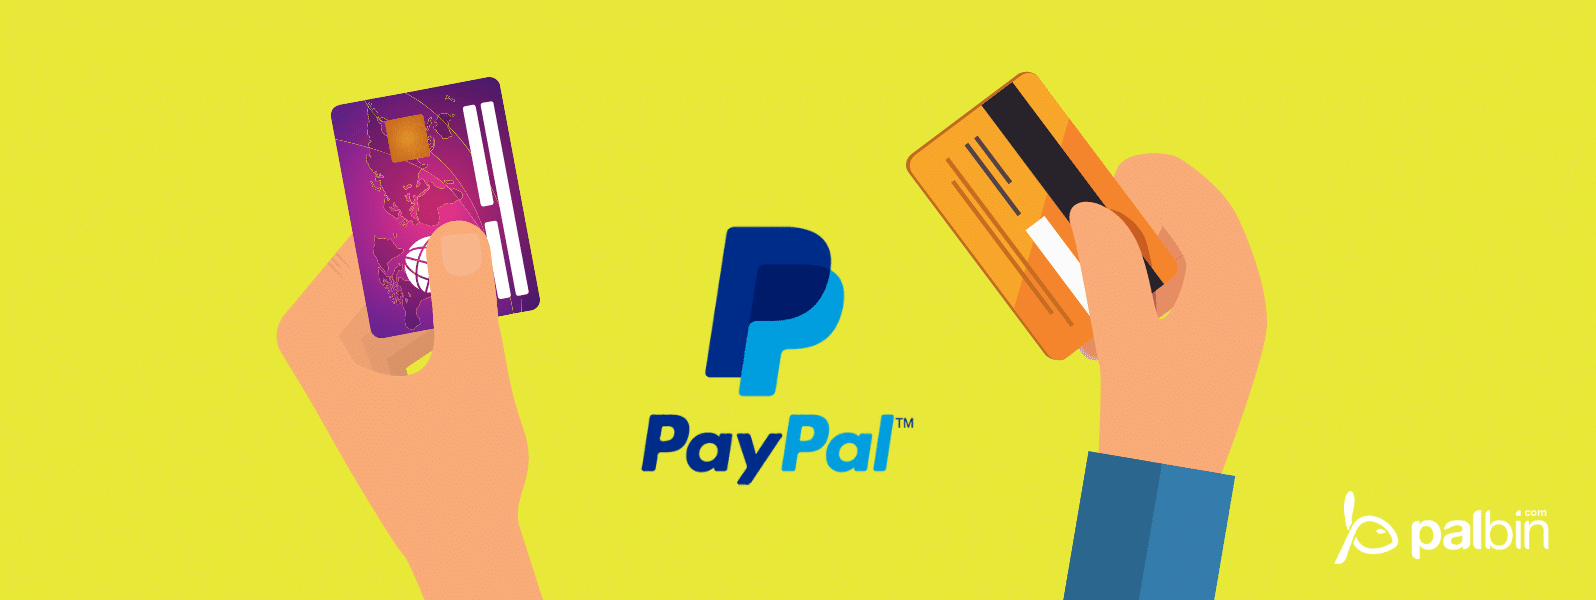 ? Vous pouvez désormais payer avec PayPal dans les magasins physiques et les boutiques (hors ligne).